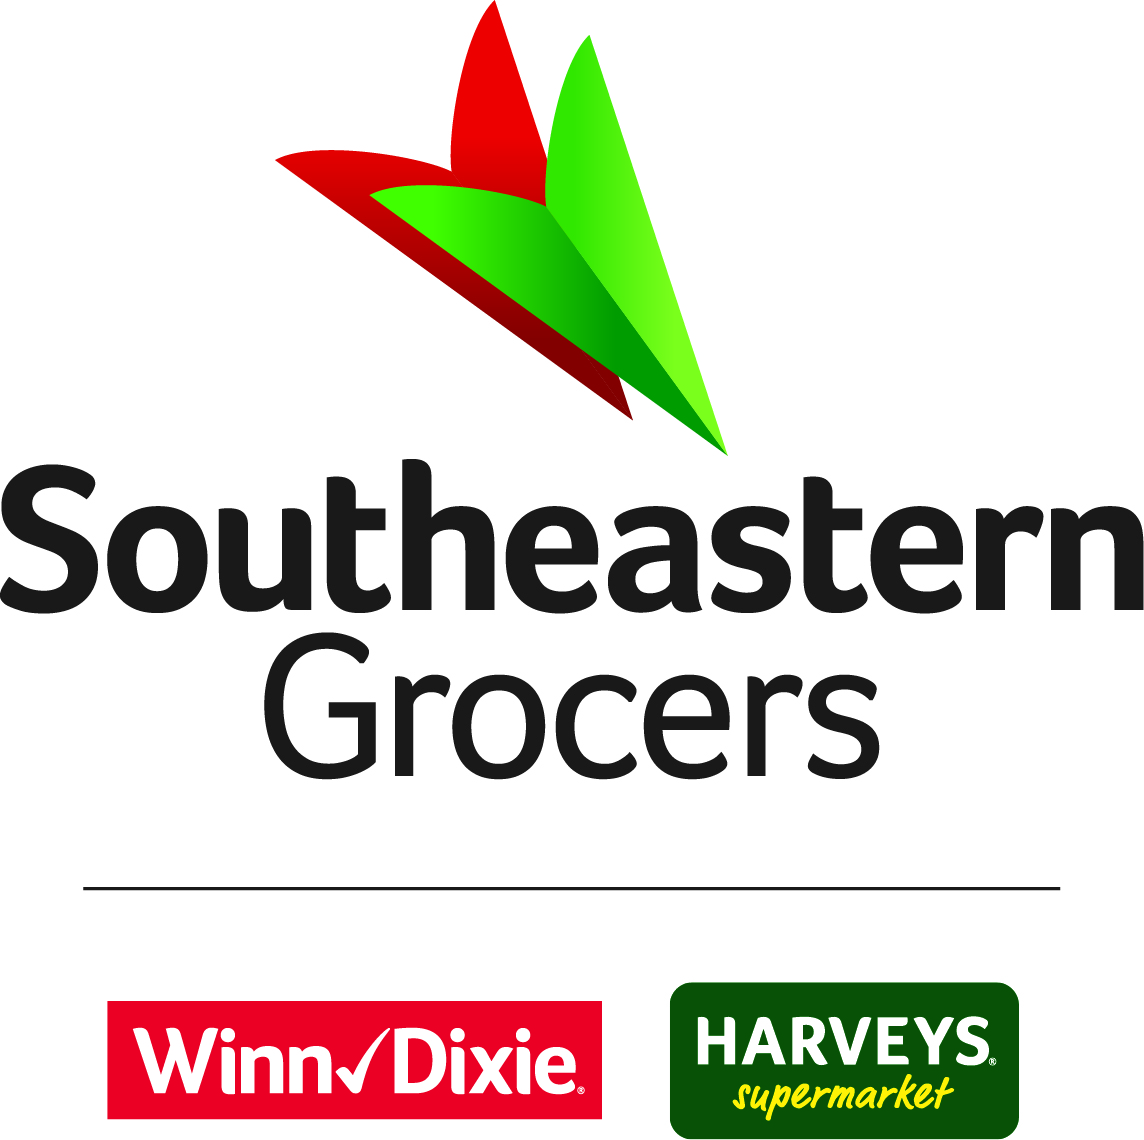 Southeastern Grocers. Winn Dixie, Harvey's